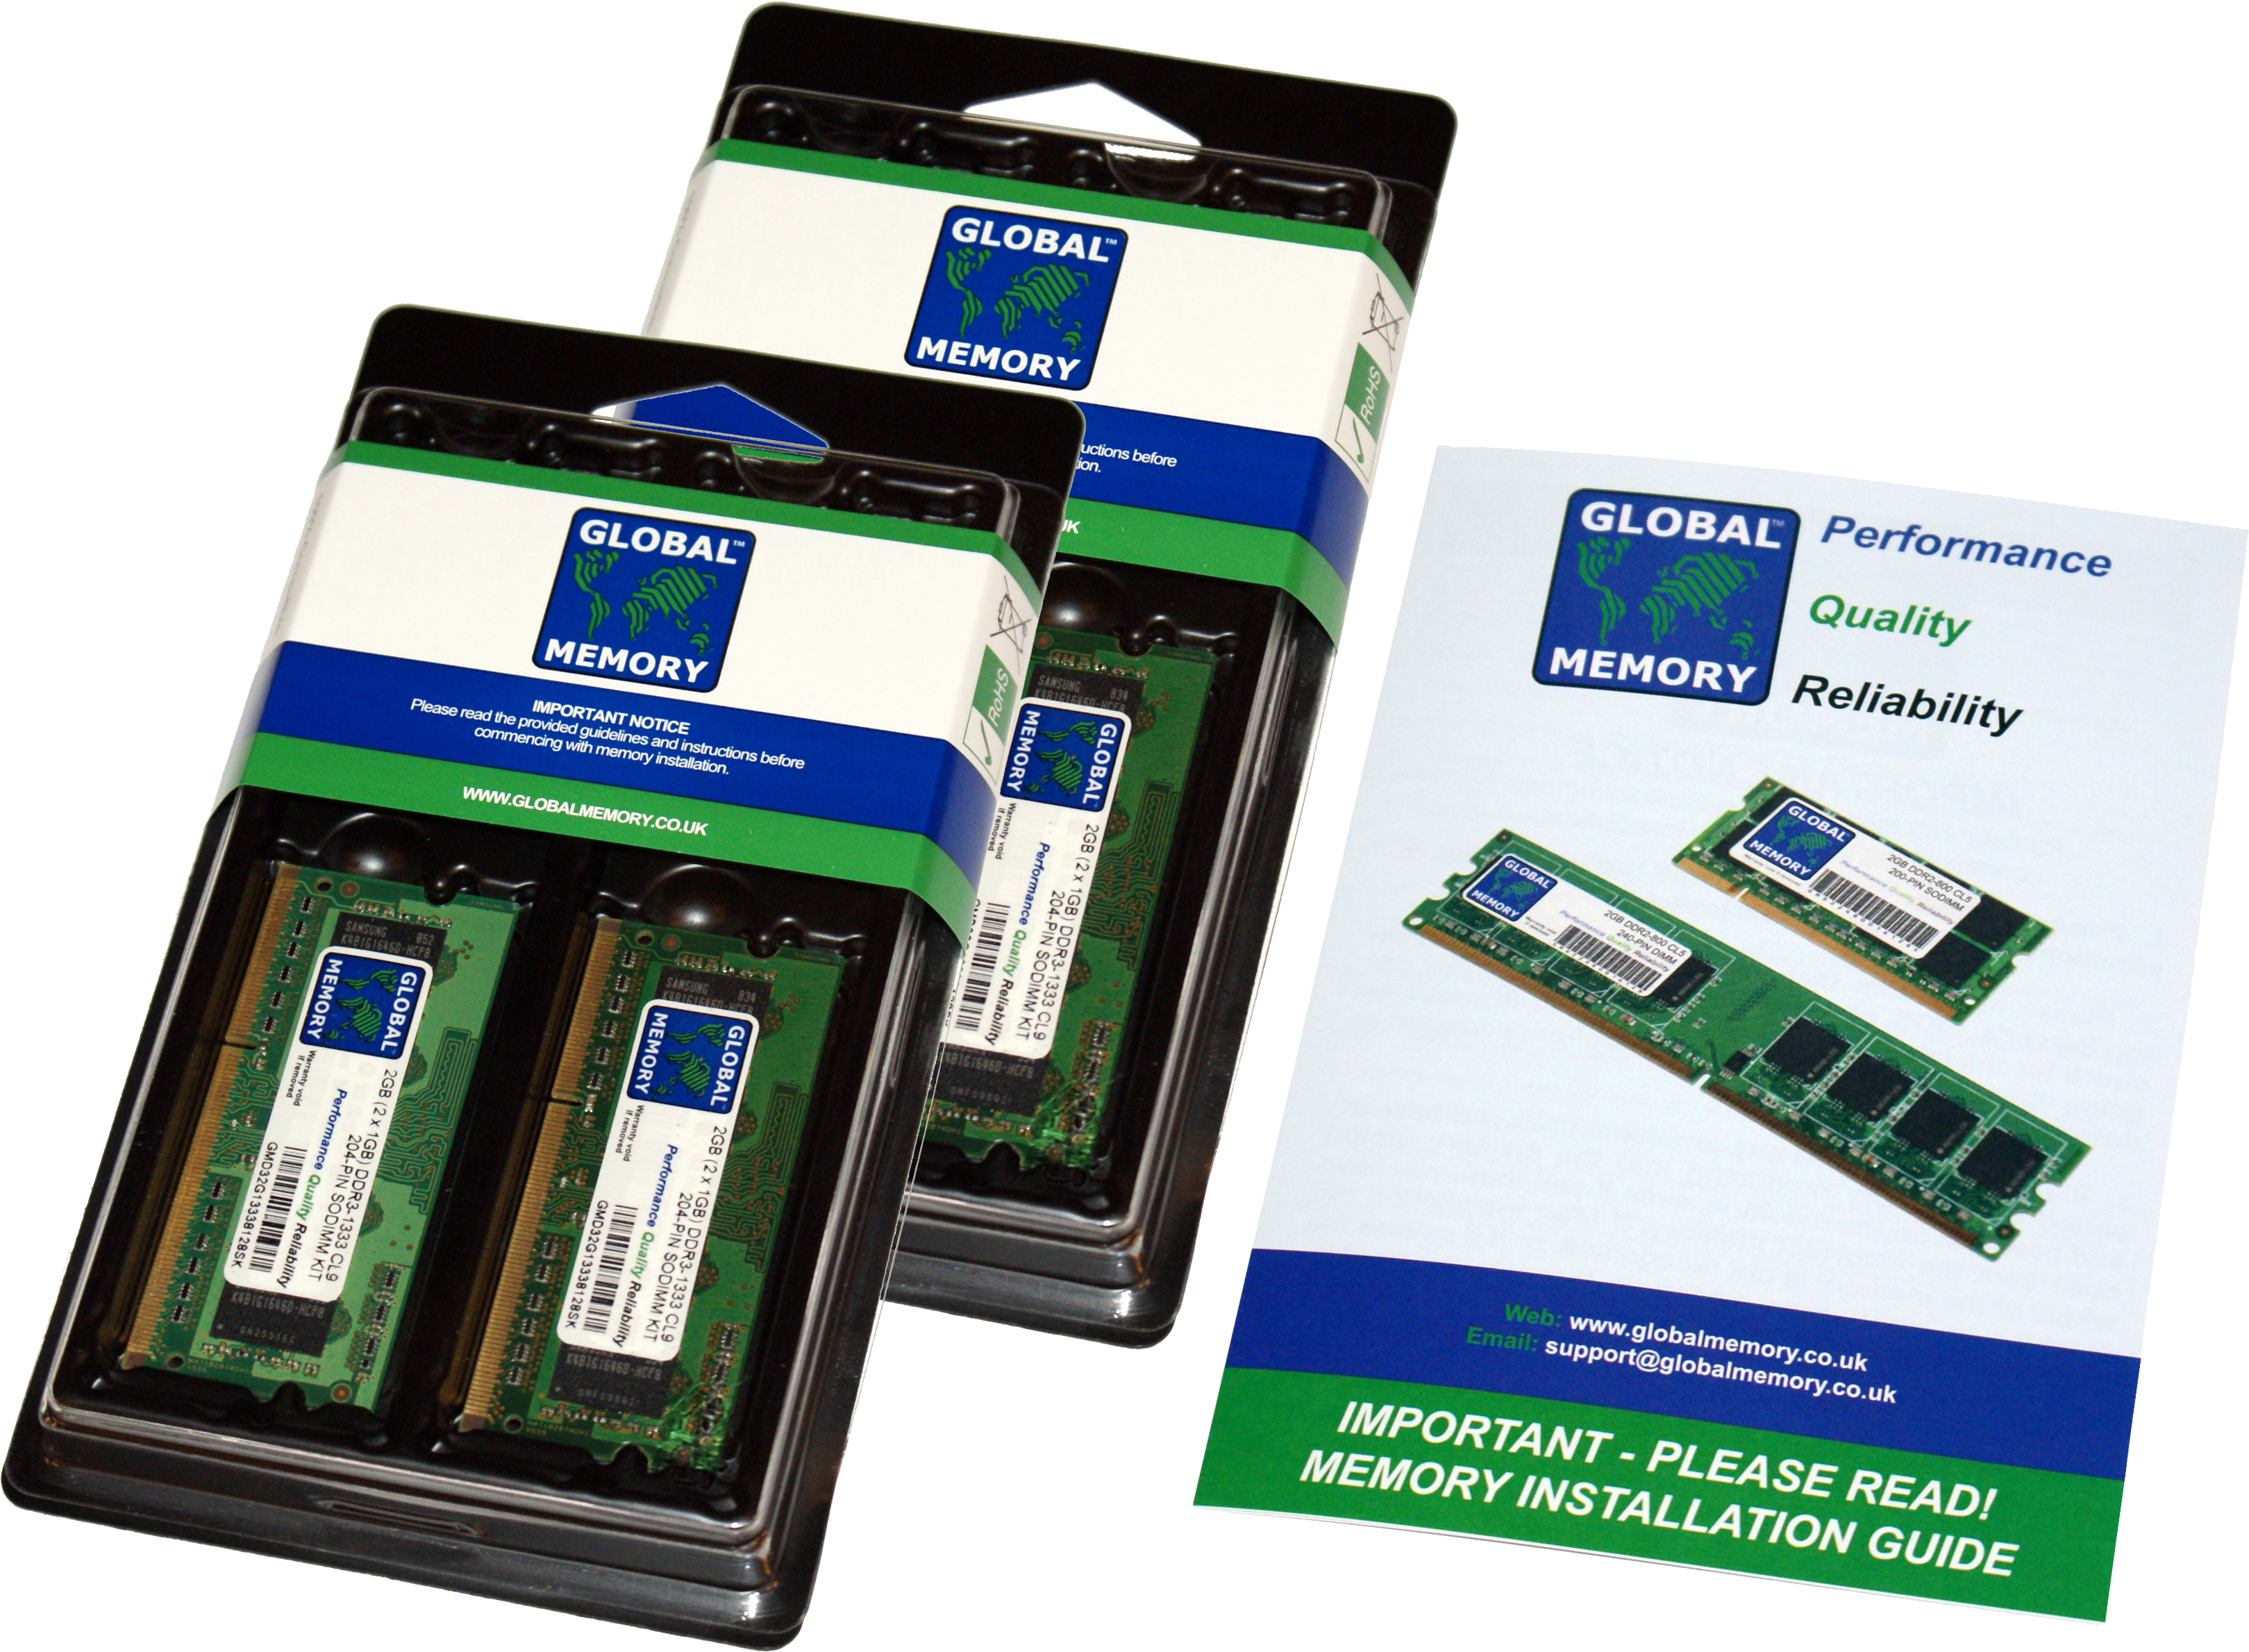 16GB (4 x 4GB) DDR4 2933MHz PC4-23400 260-PIN SODIMM MEMORY RAM KIT FOR FUJITSU LAPTOPS/NOTEBOOKS